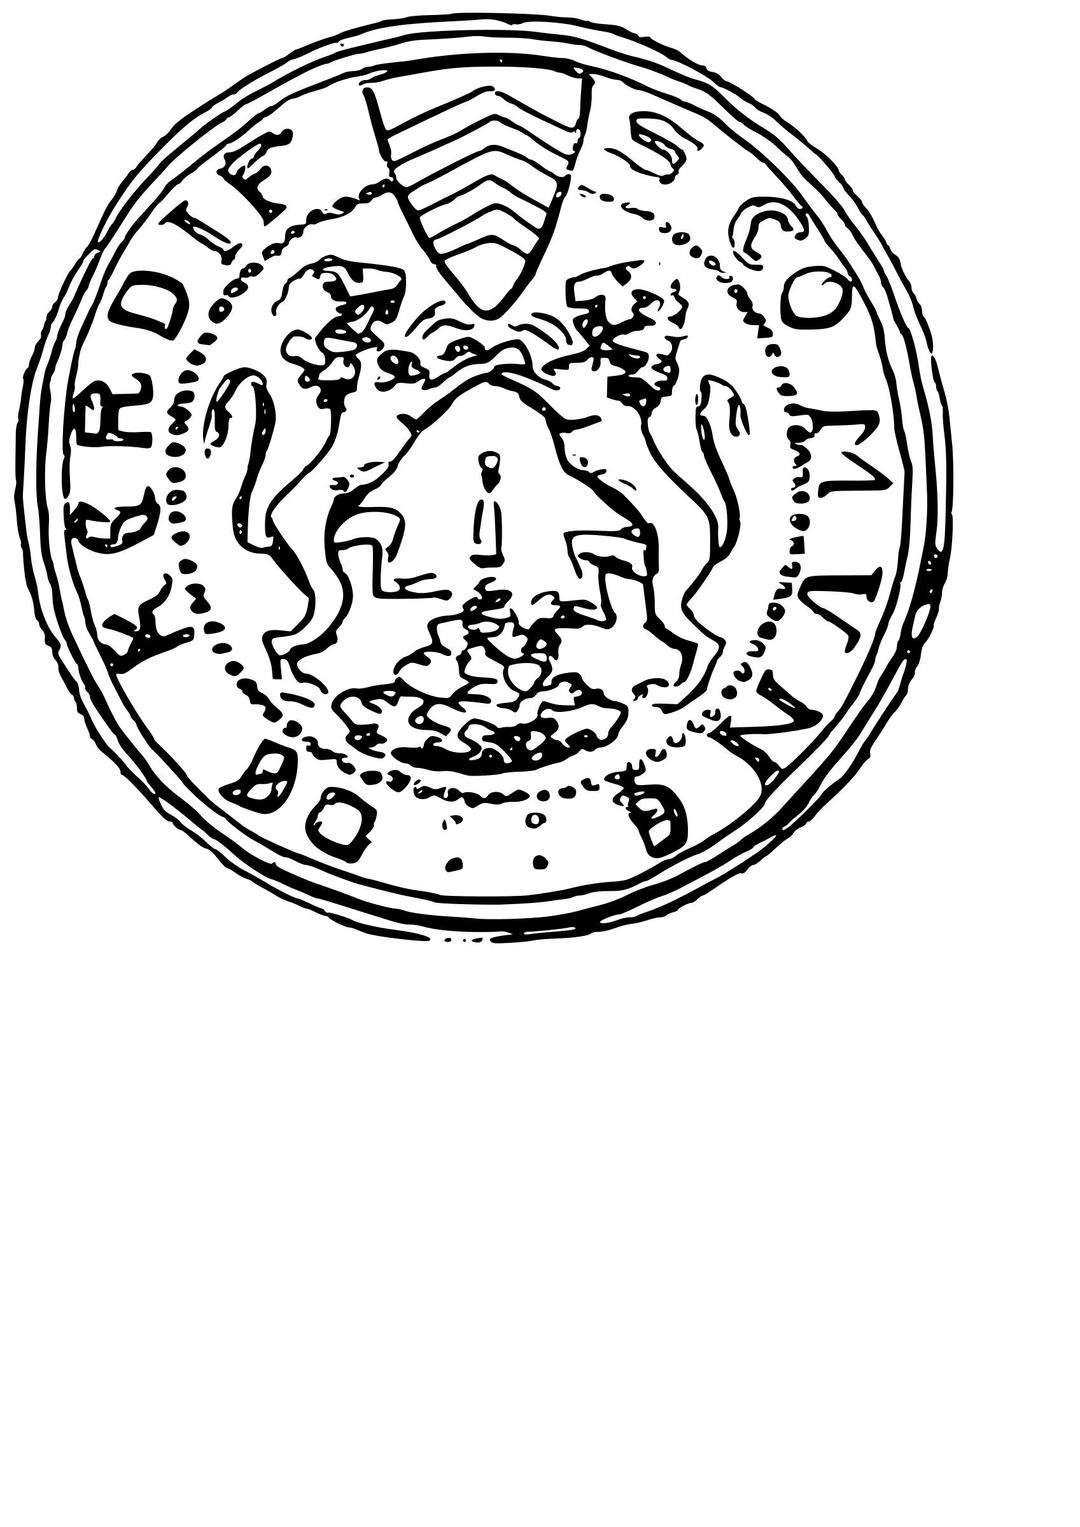 Sêl hynafol Caerdydd | Cardiff's ancient seal png transparent